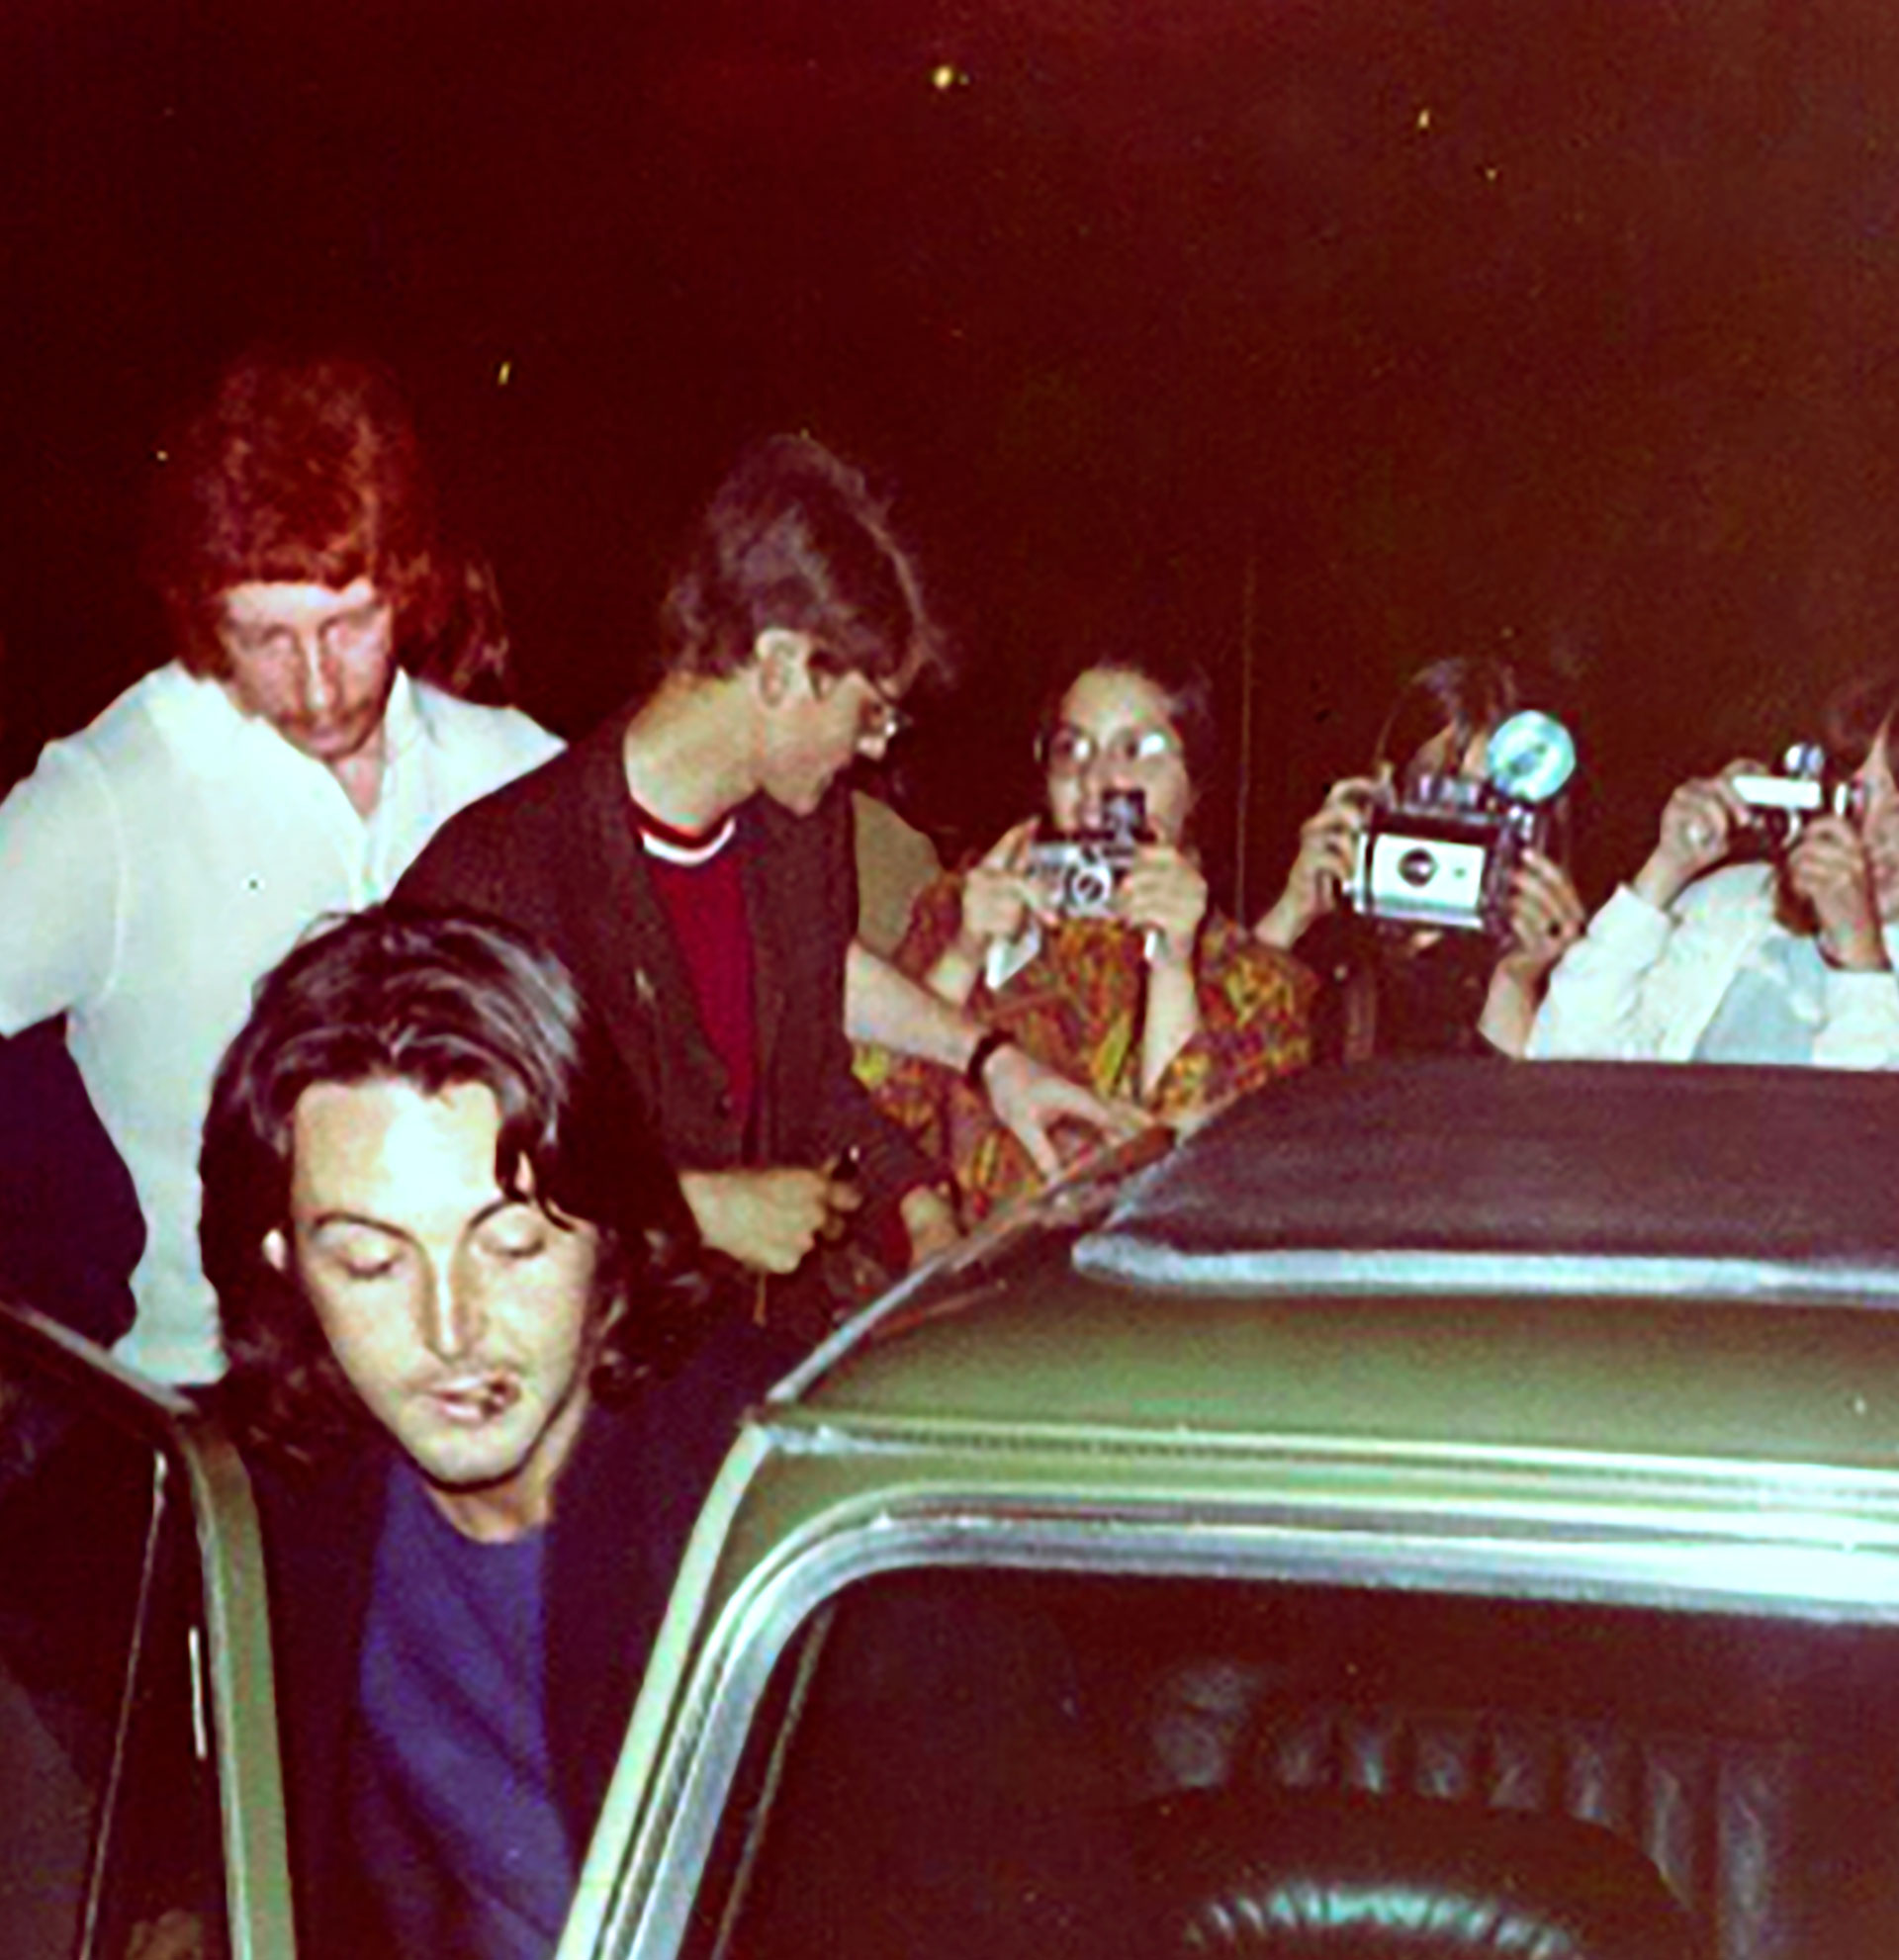 En la imagen, Kevin Harrington escoltando a Paul McCartney (Foto extraída del libro "Who's the redhead on the roof")